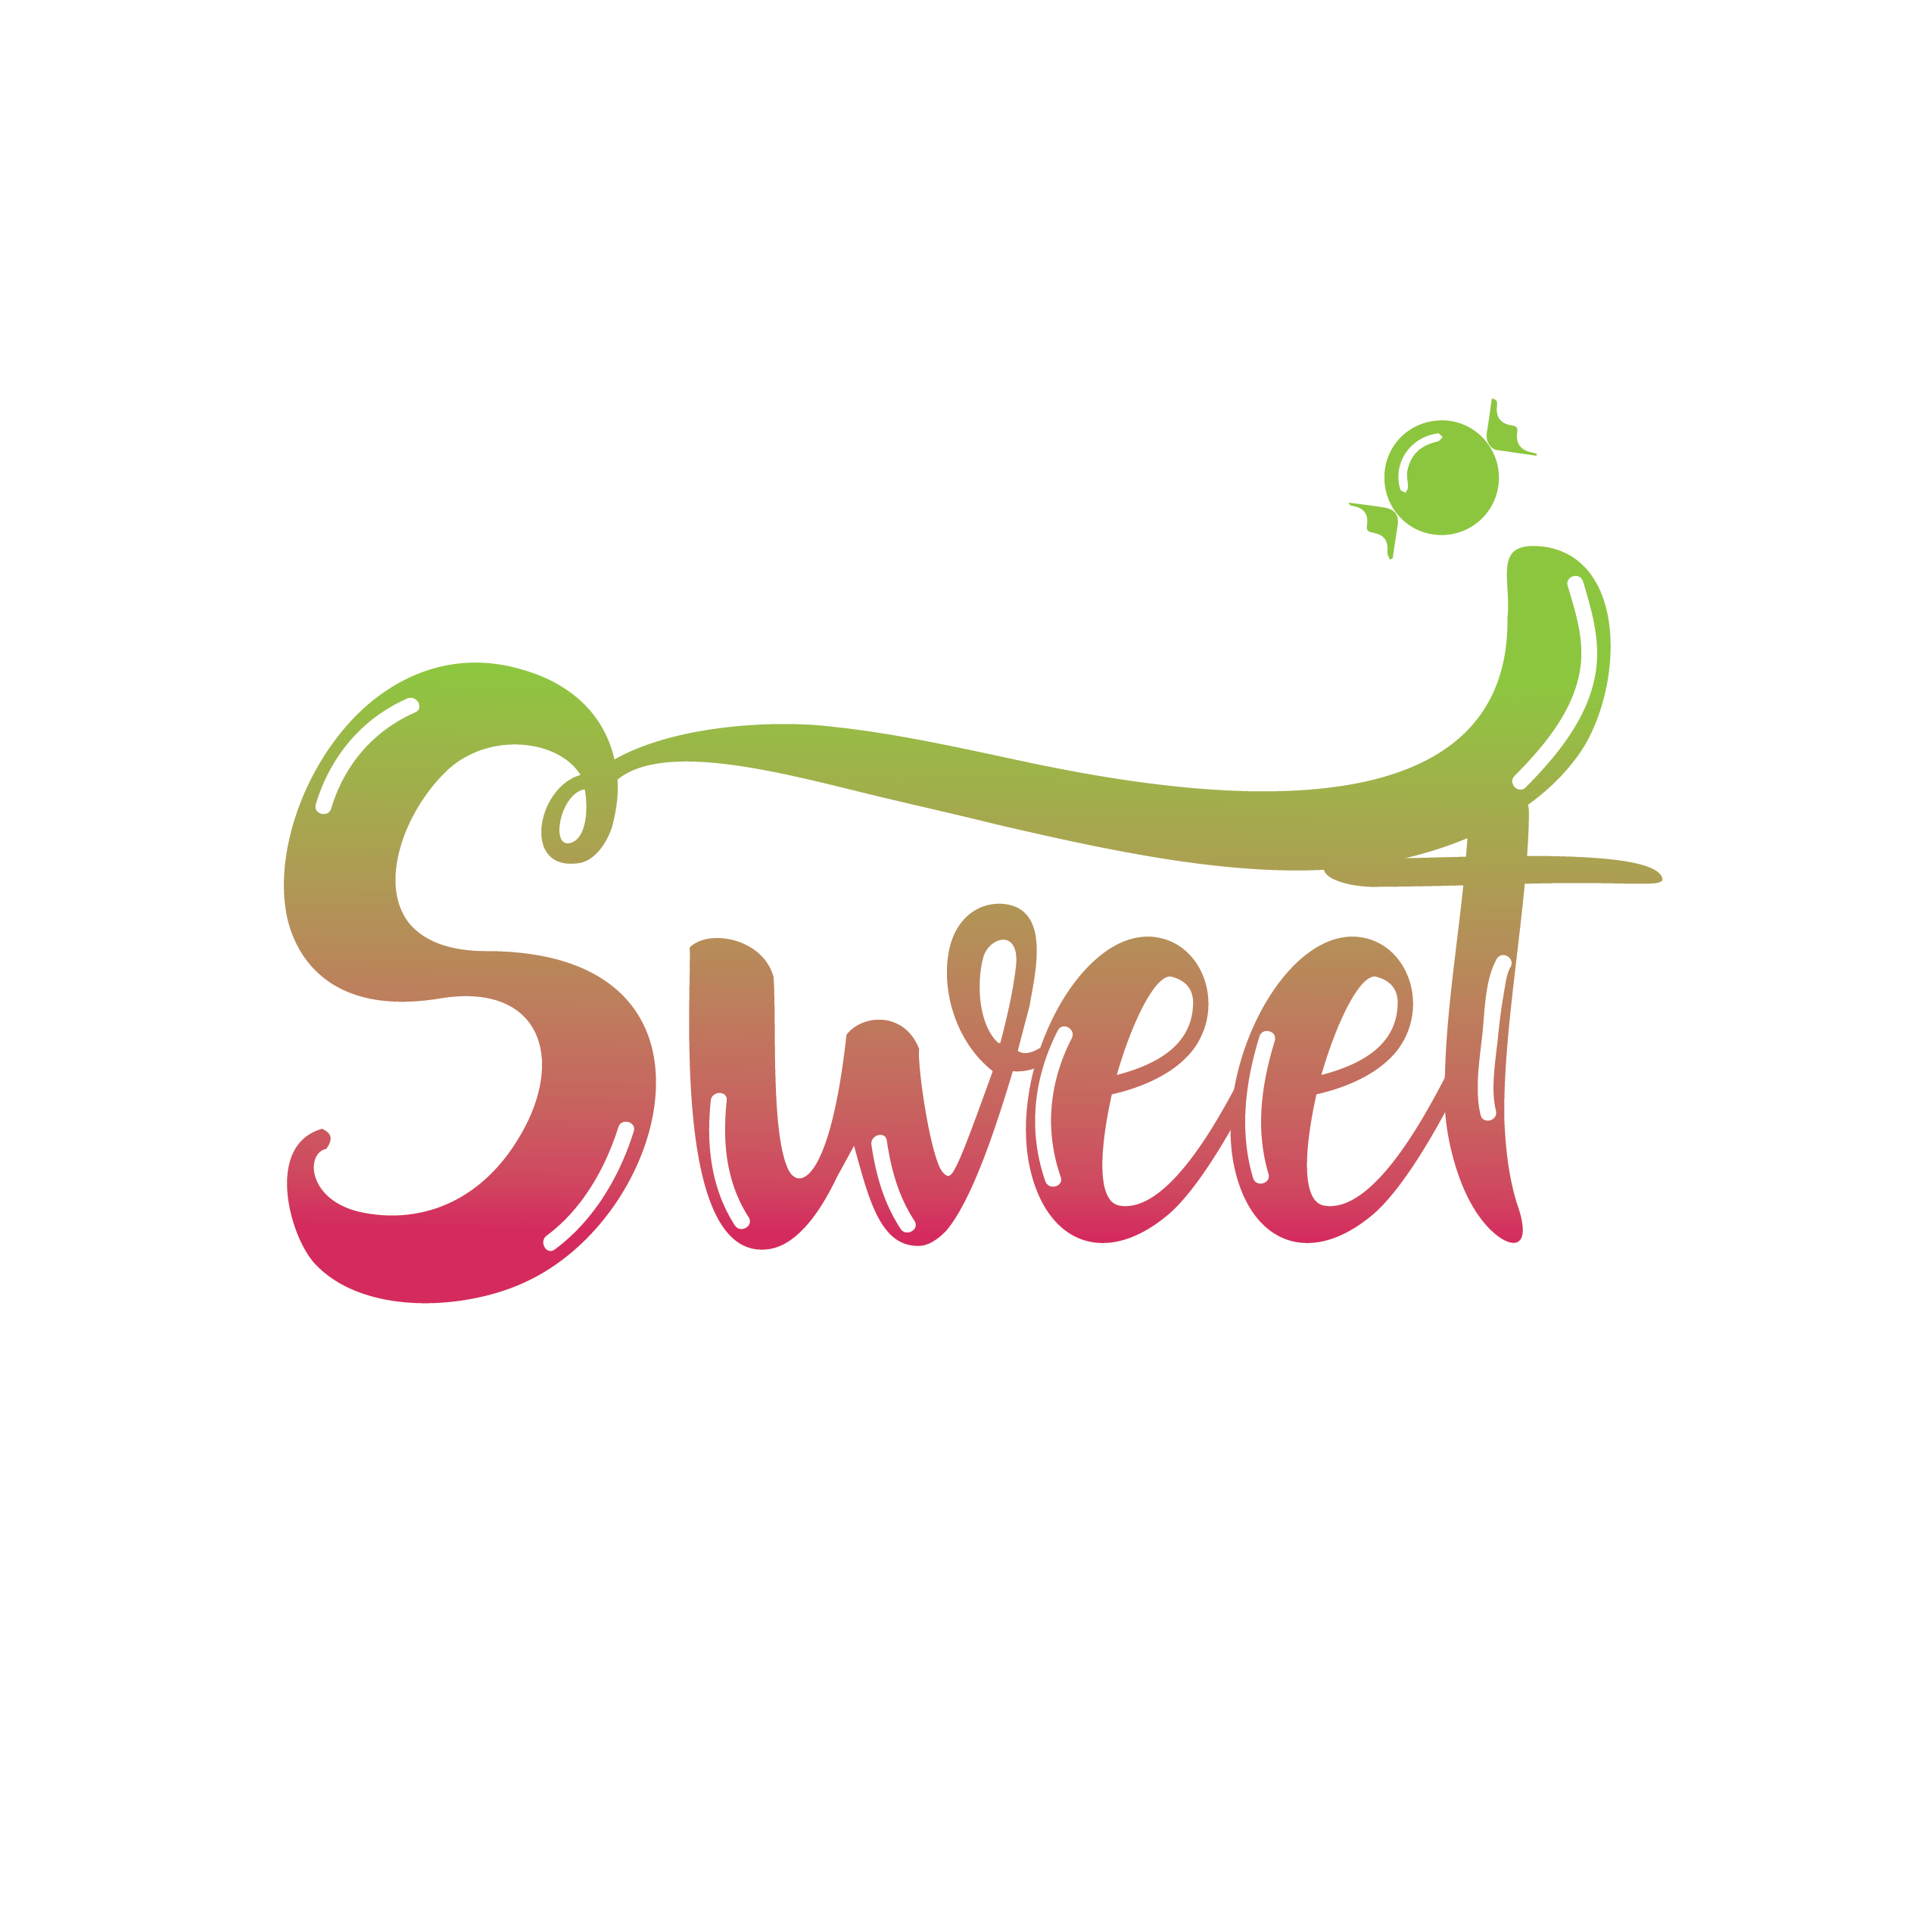 Sweet logo by JstudioWorks on DeviantArt